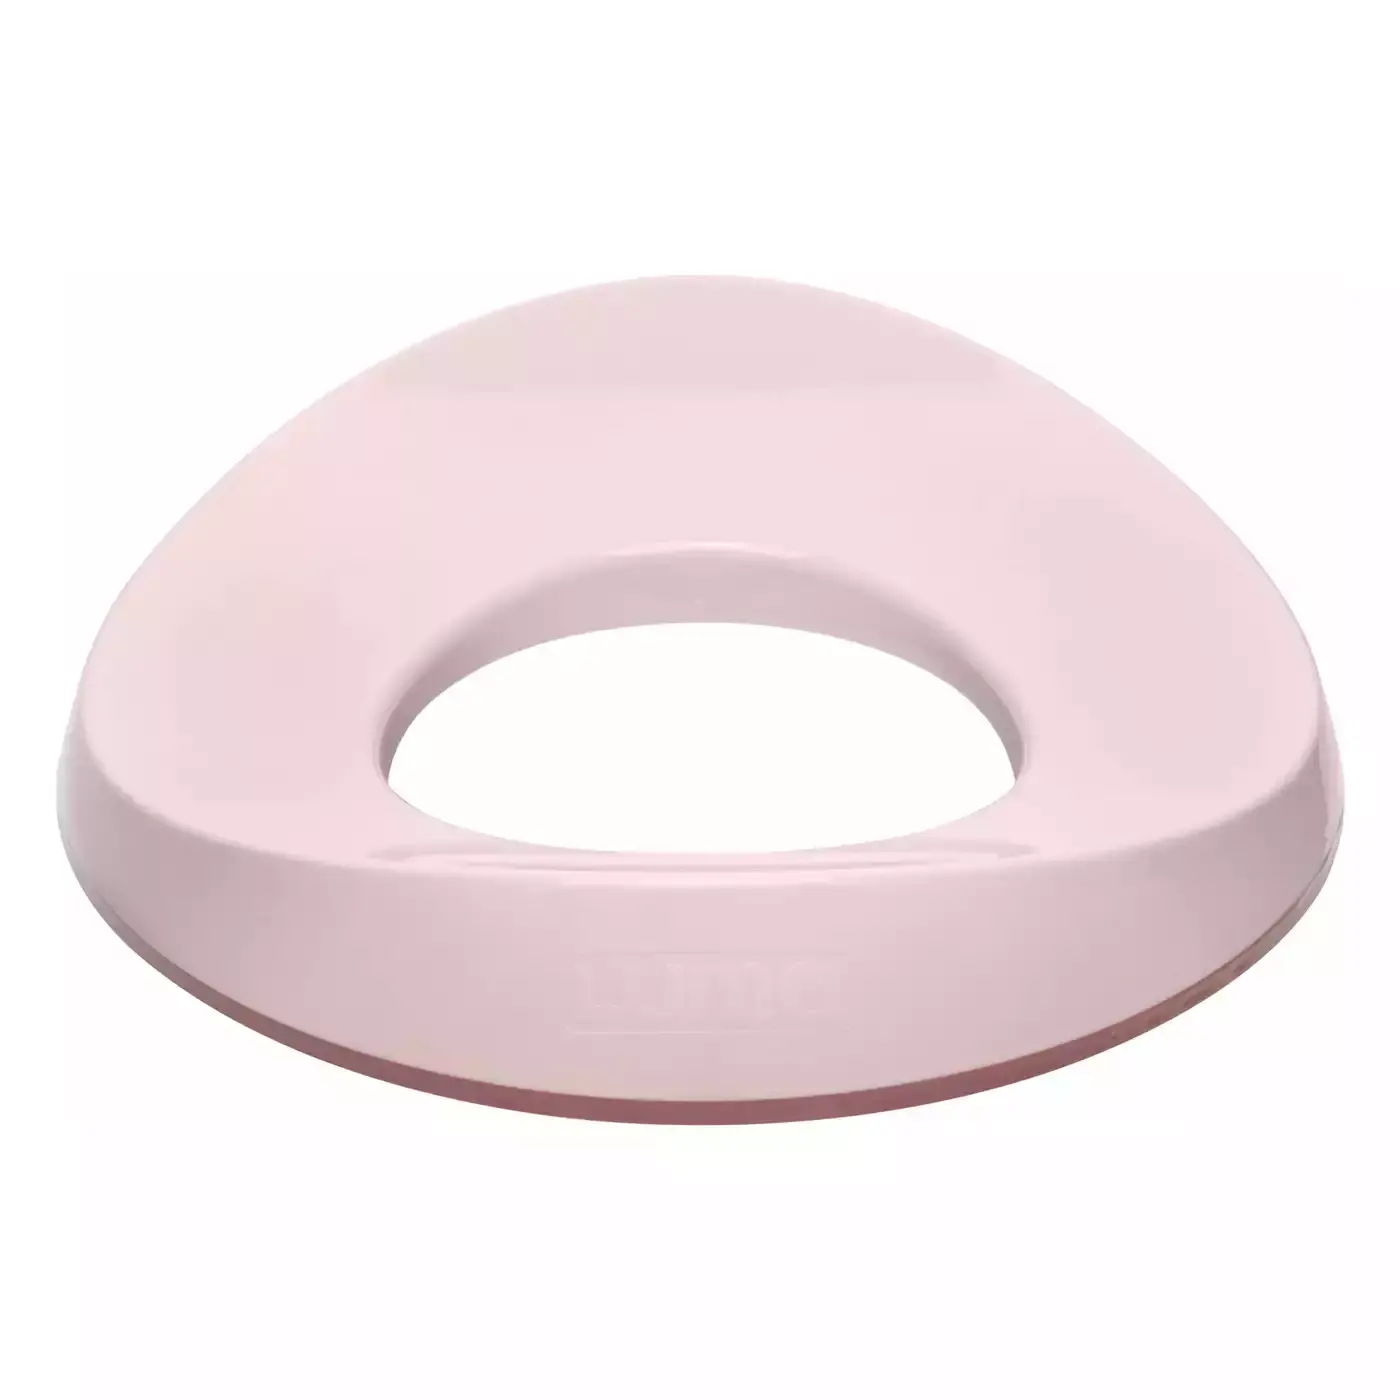 Toilettensitz Blossom Pink LUMA Rosa 2000580262902 3